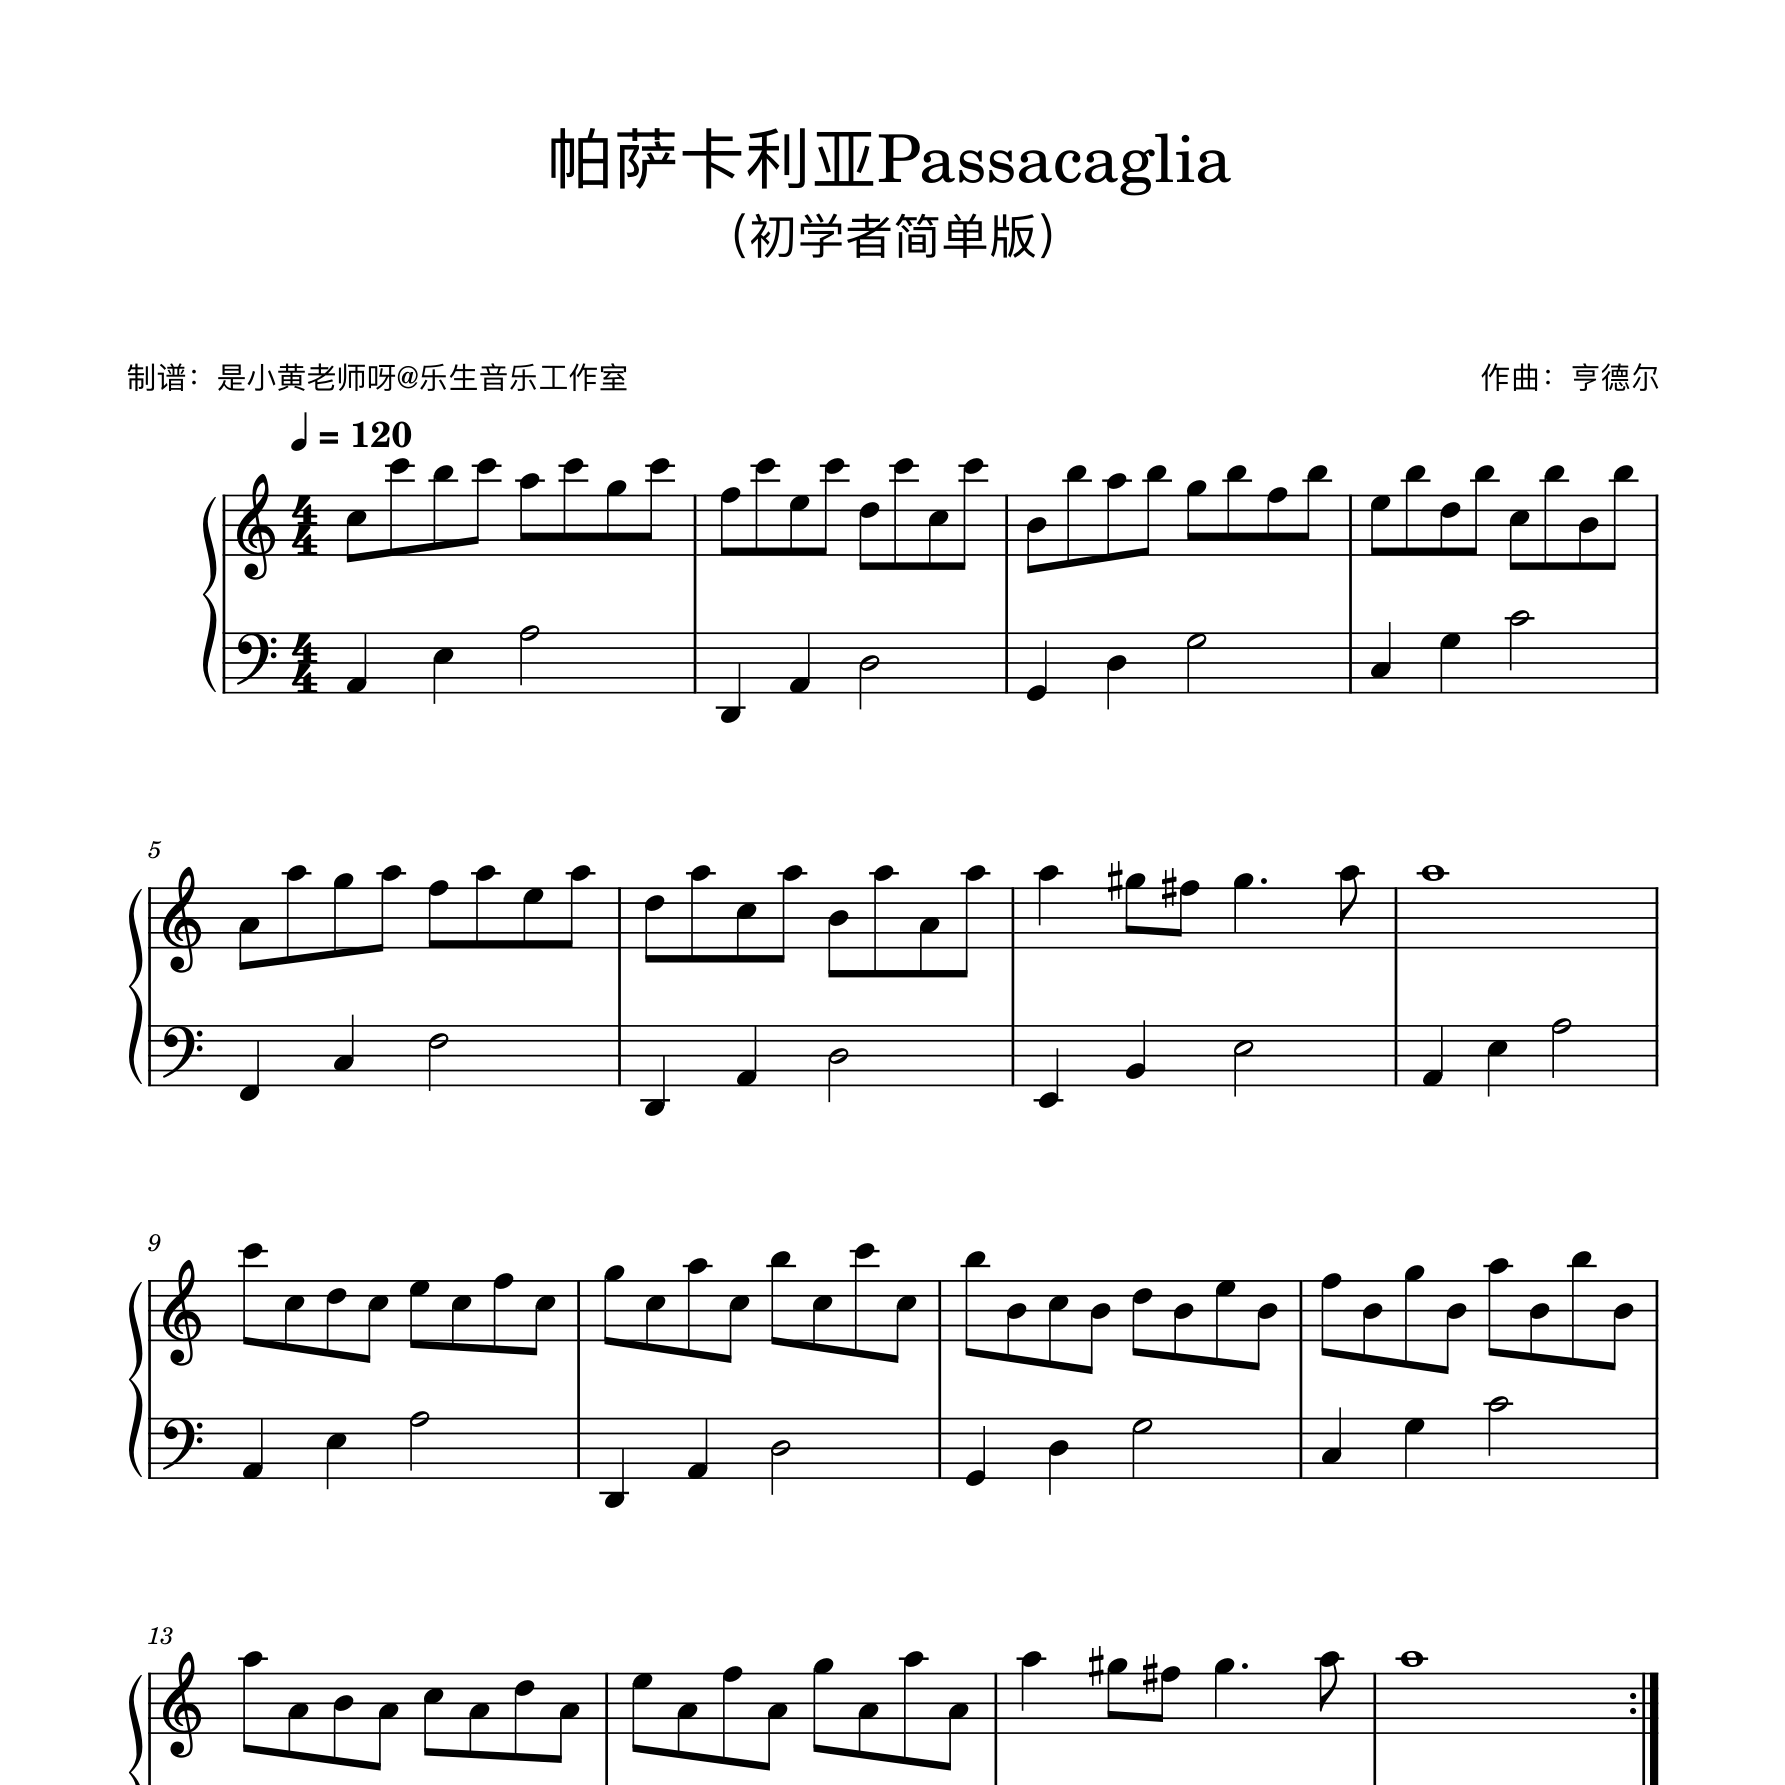 帕萨卡利亚Passacaglia钢琴谱